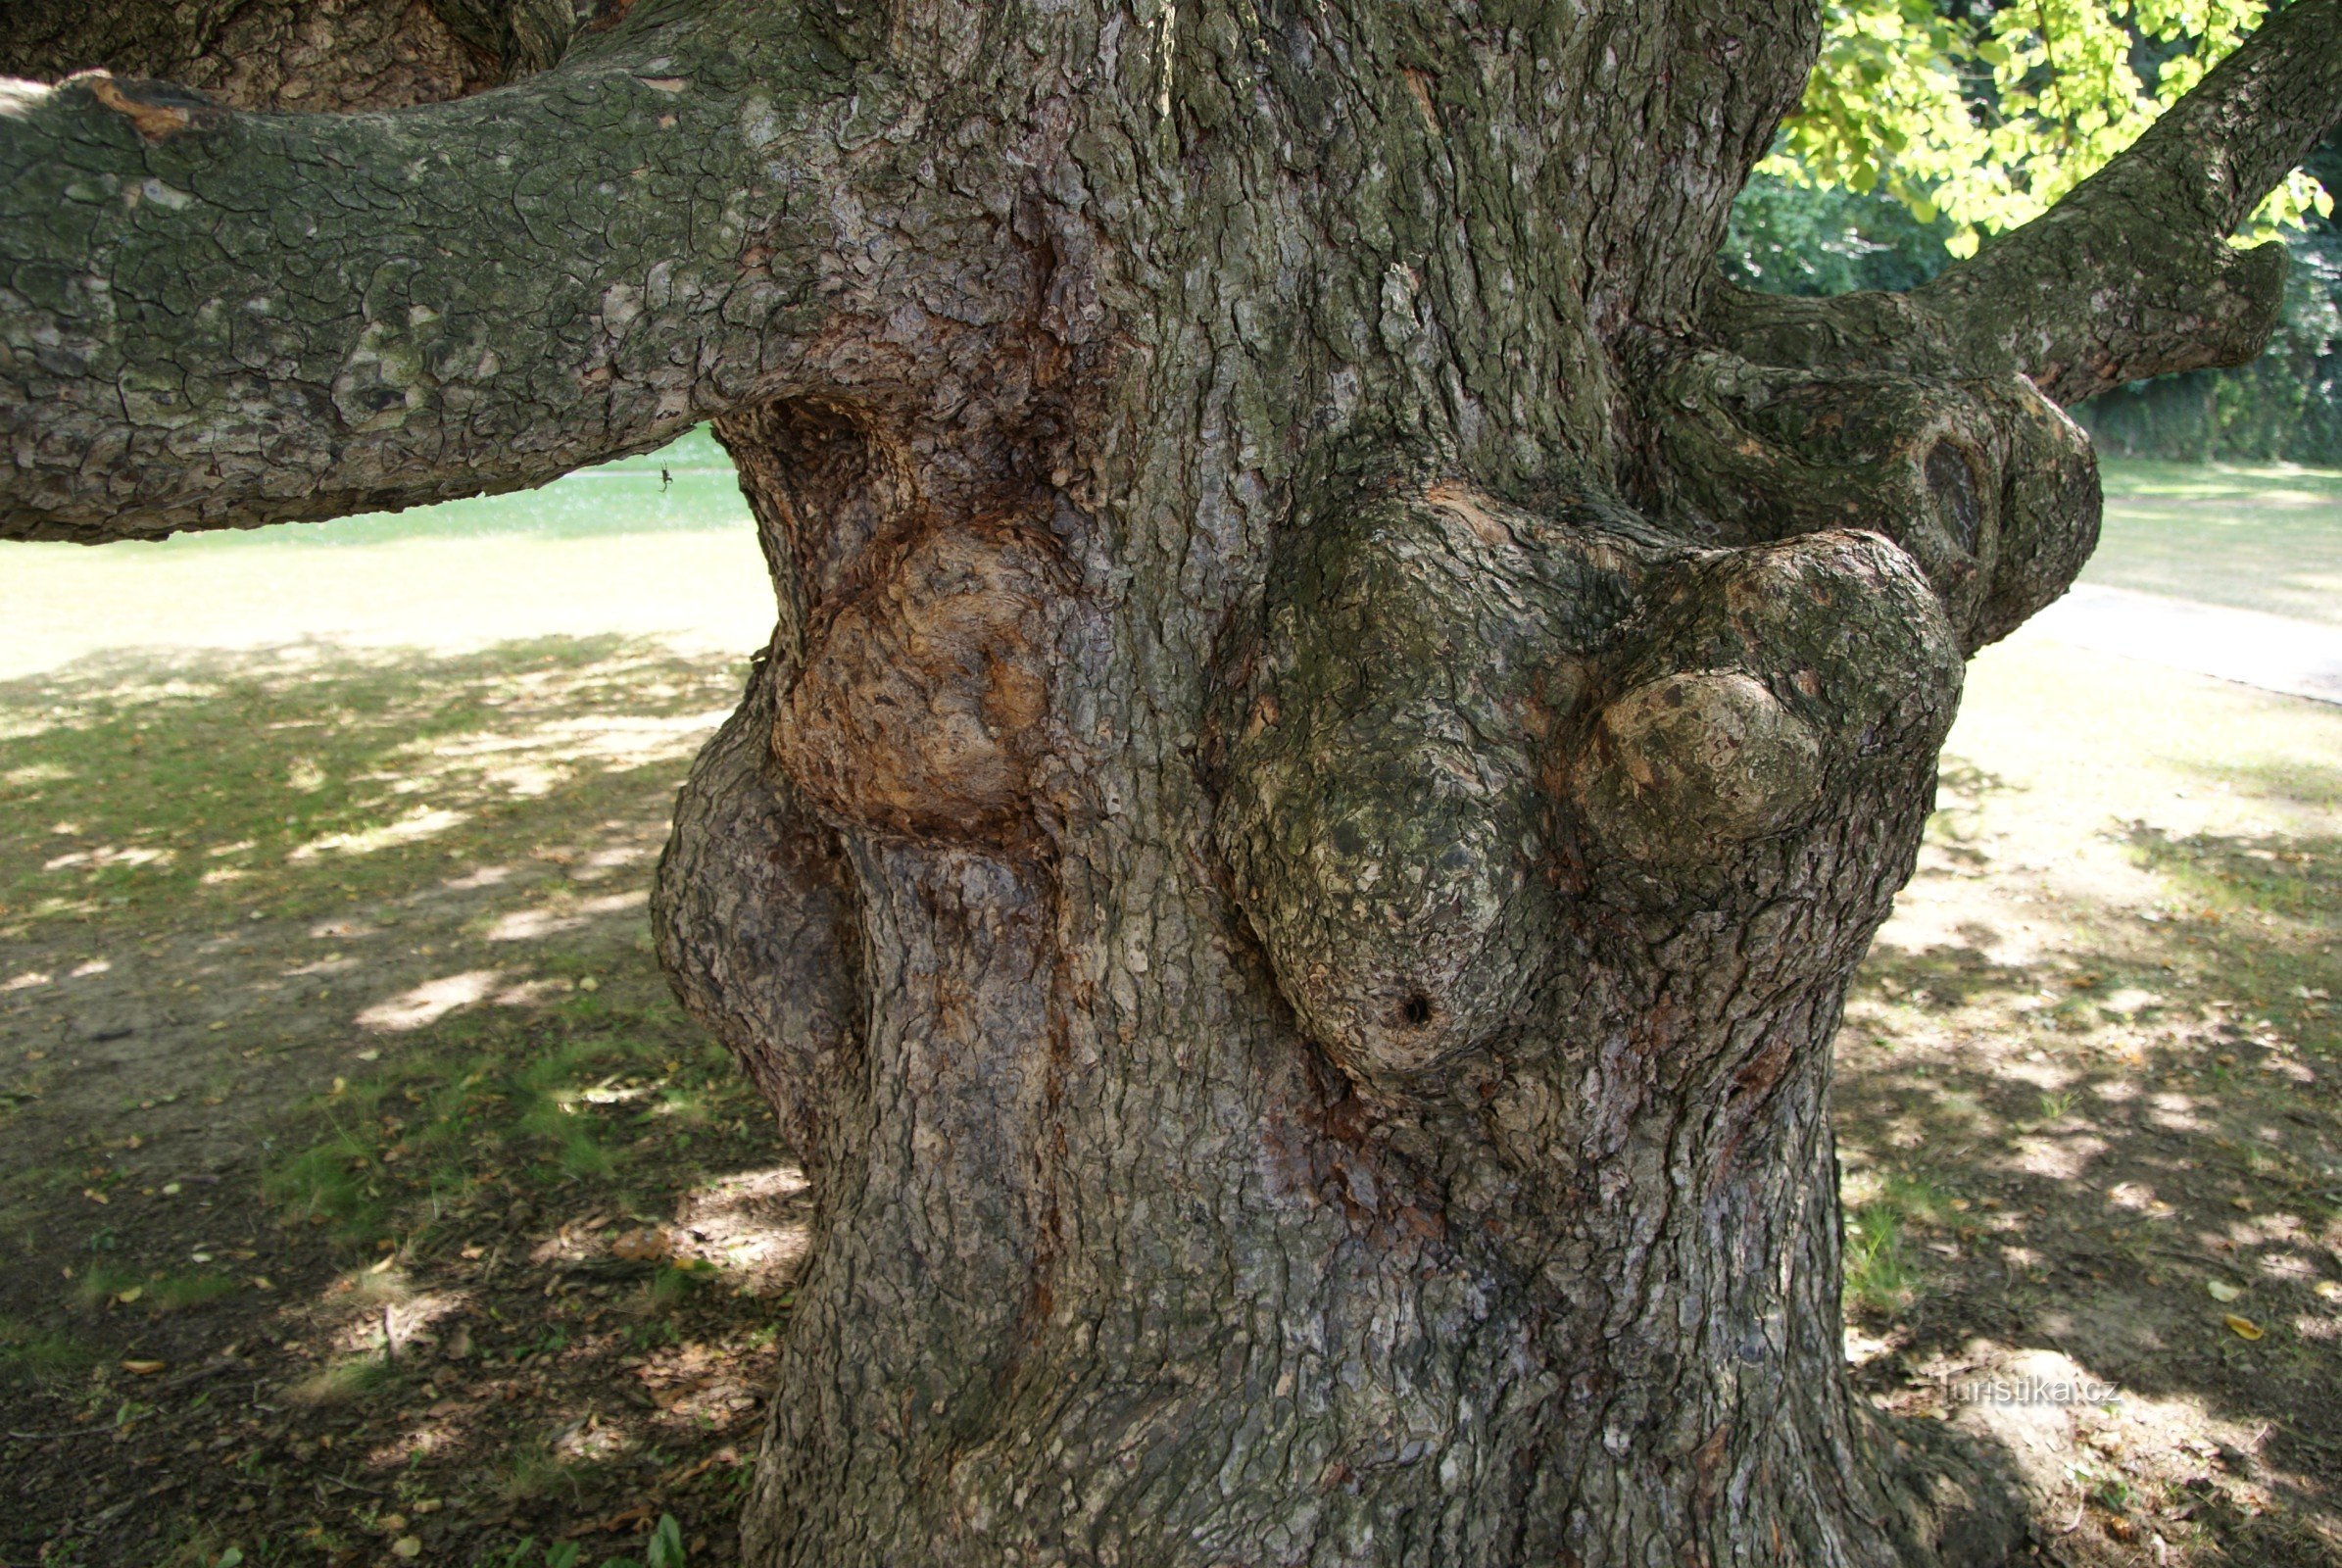 Босковице – сказочное дерево в замковом саду (орешник турецкий)